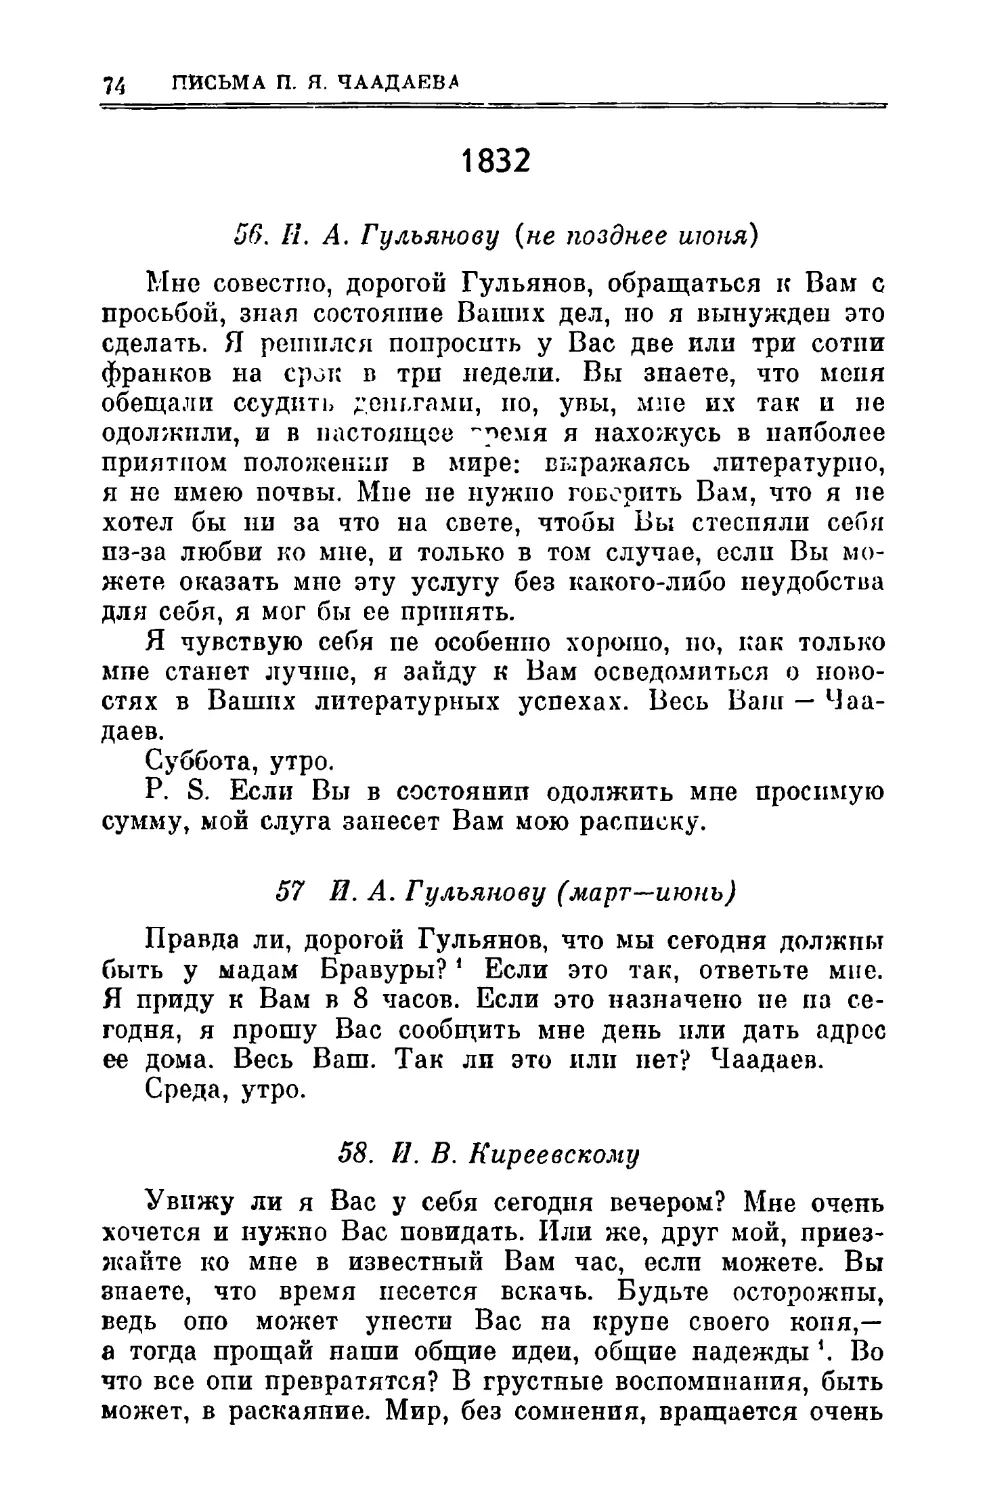 1832
57. Гульянову И.A. ІІІ—VI
58. Киреевскому И.В.